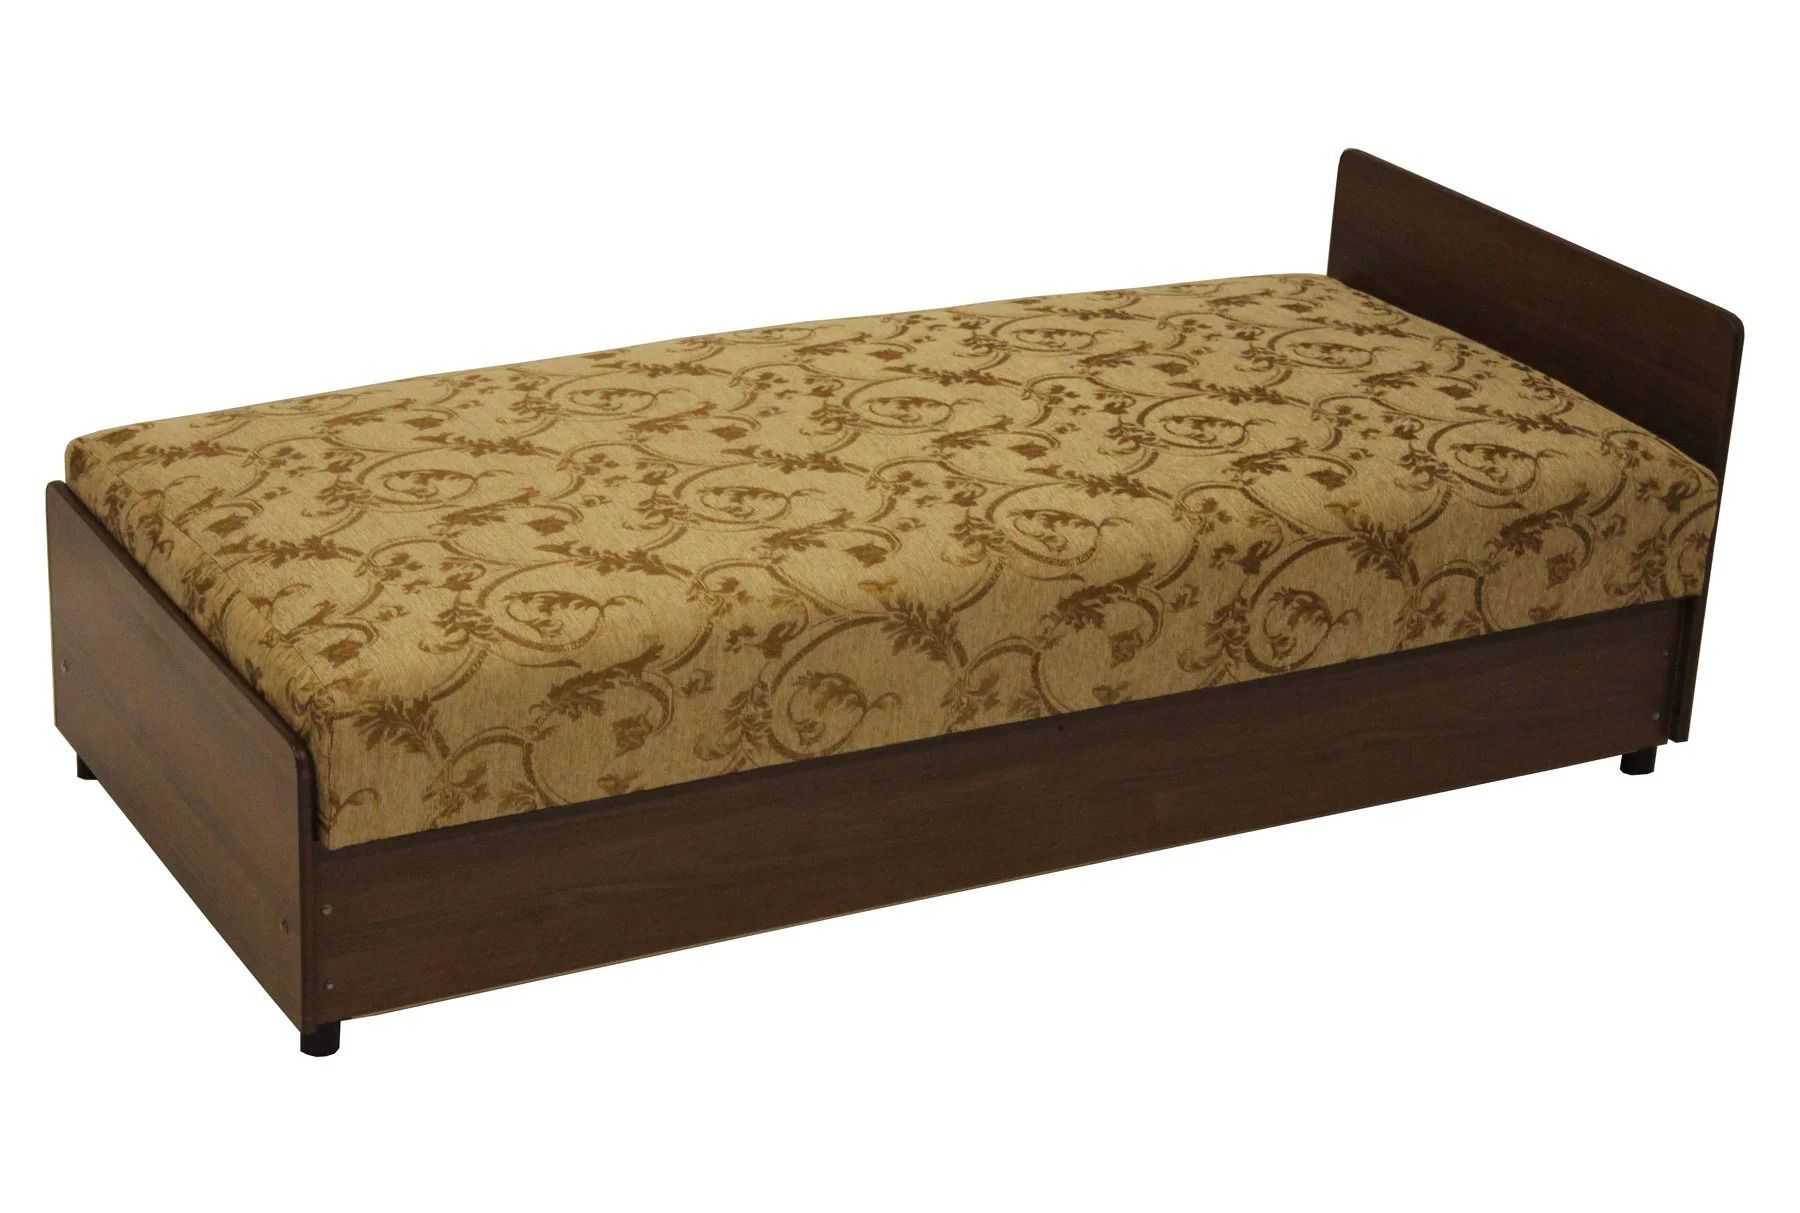 Кровать диван тахта софа с выдвижными ящиками